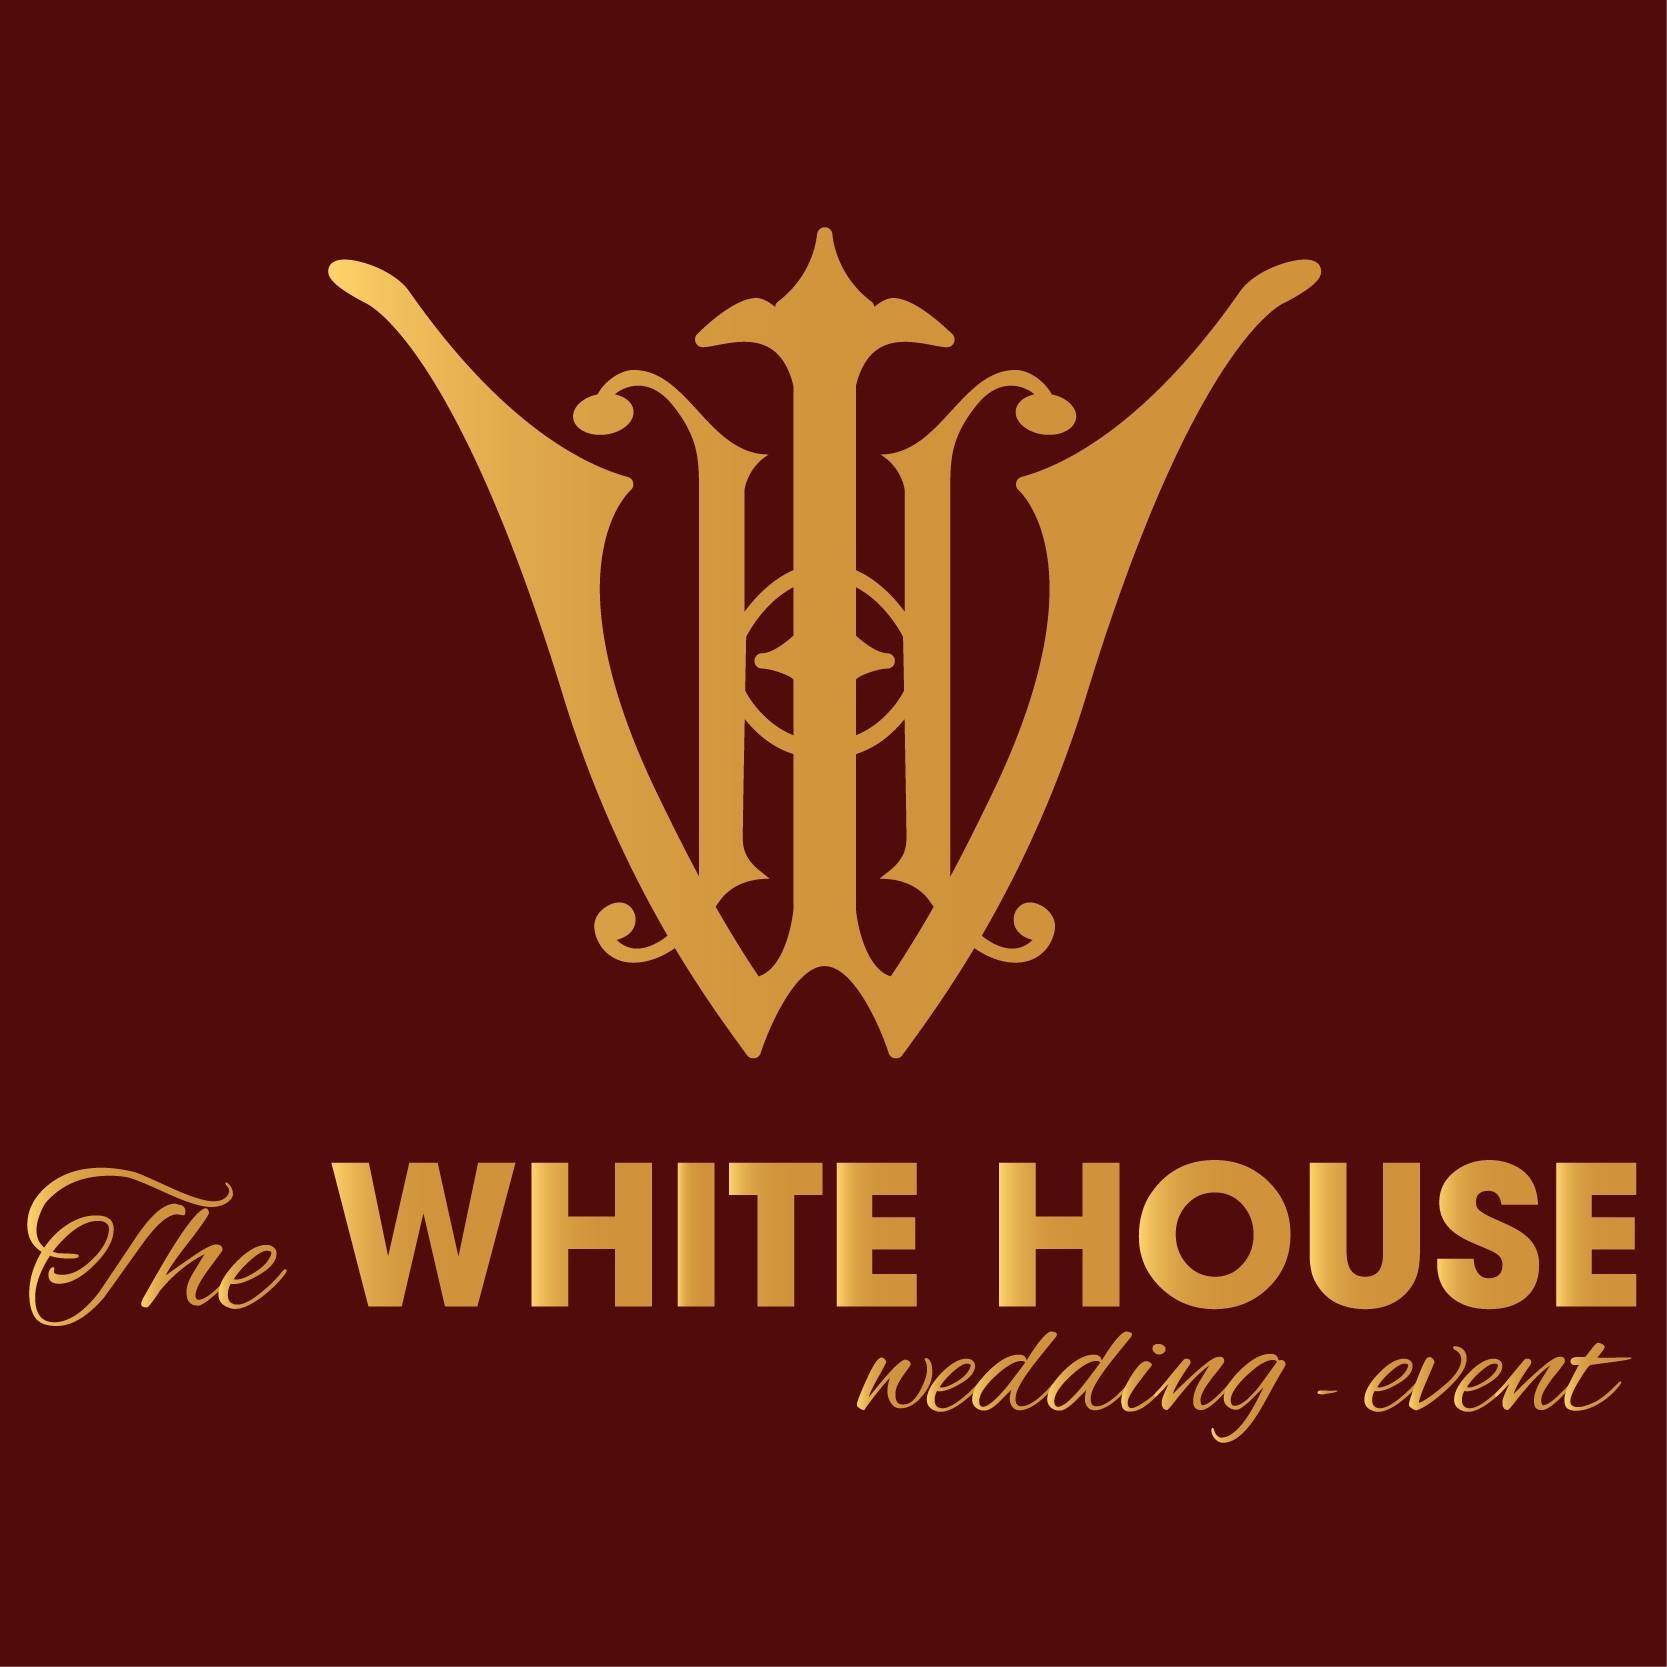 The White House Wedding